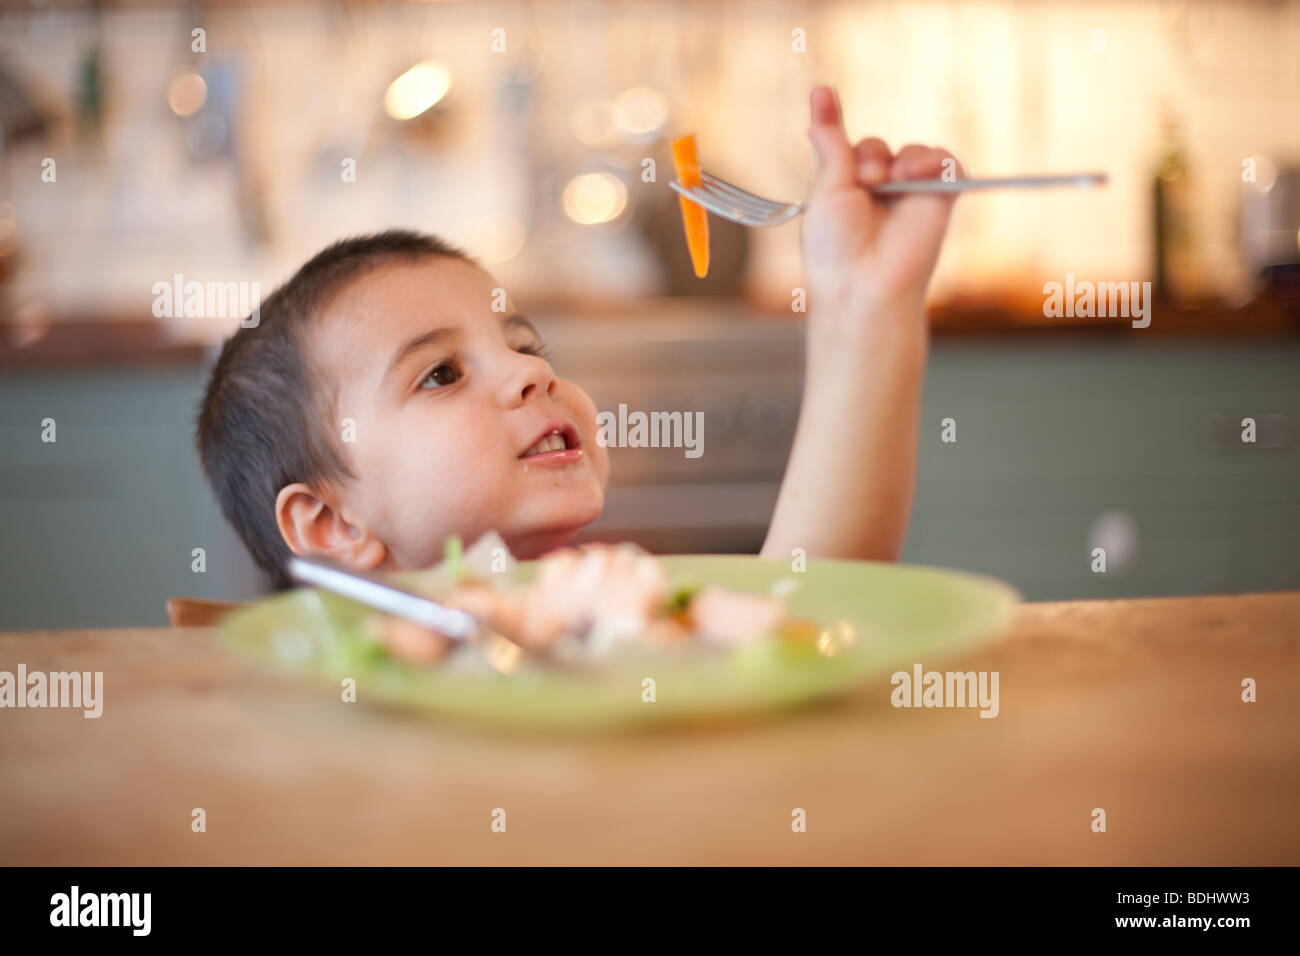 Garçon jouant avec sa nourriture sur une fourchette à une table de cuisine Banque D'Images